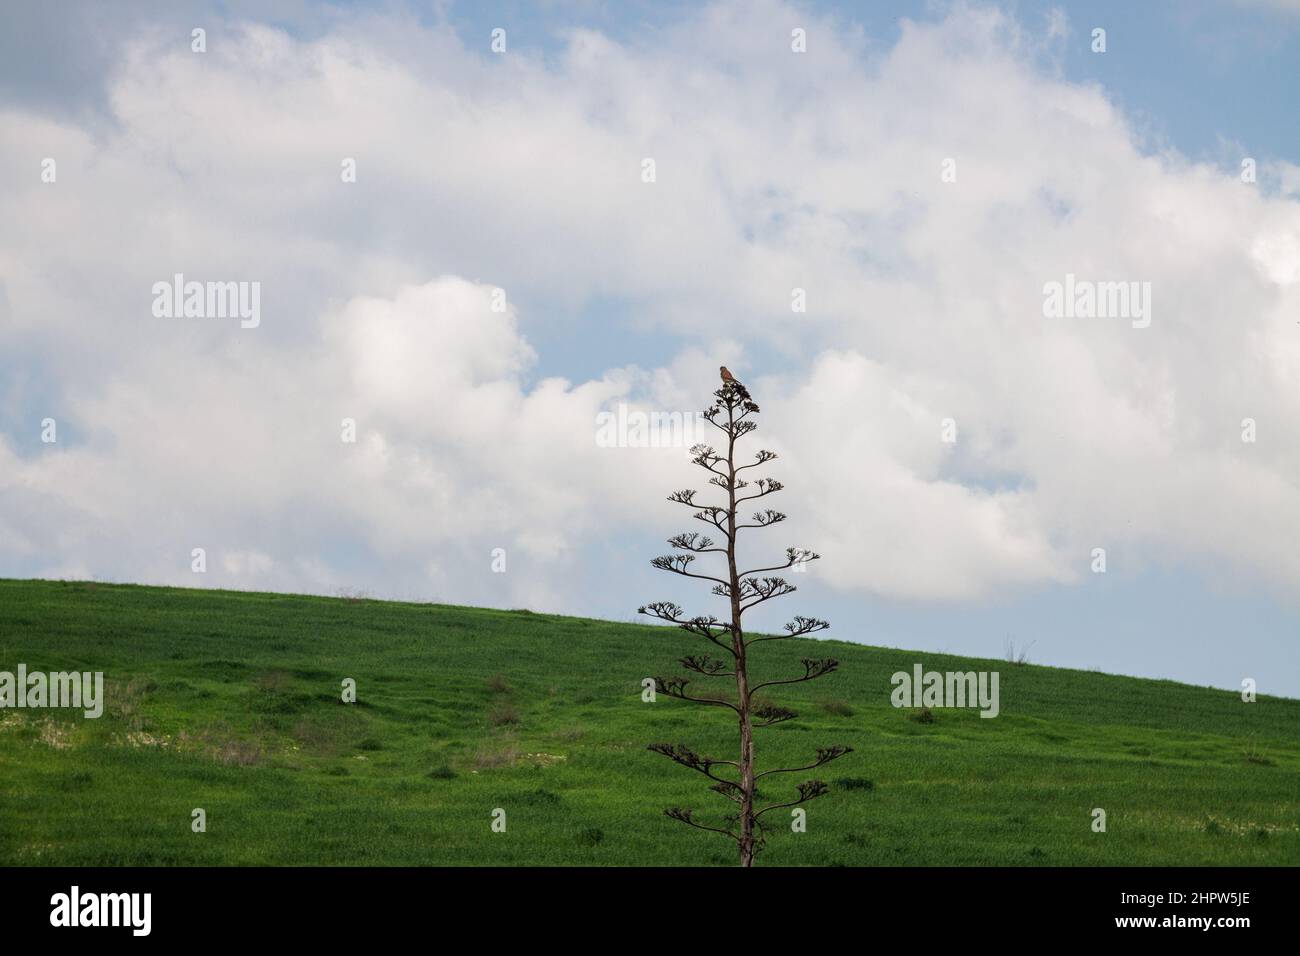 Ein Turmfalkenvögel auf der Spitze eines Baumes. Falco tinnunculus. Gejagte Beute bereit zum Essen Stockfoto